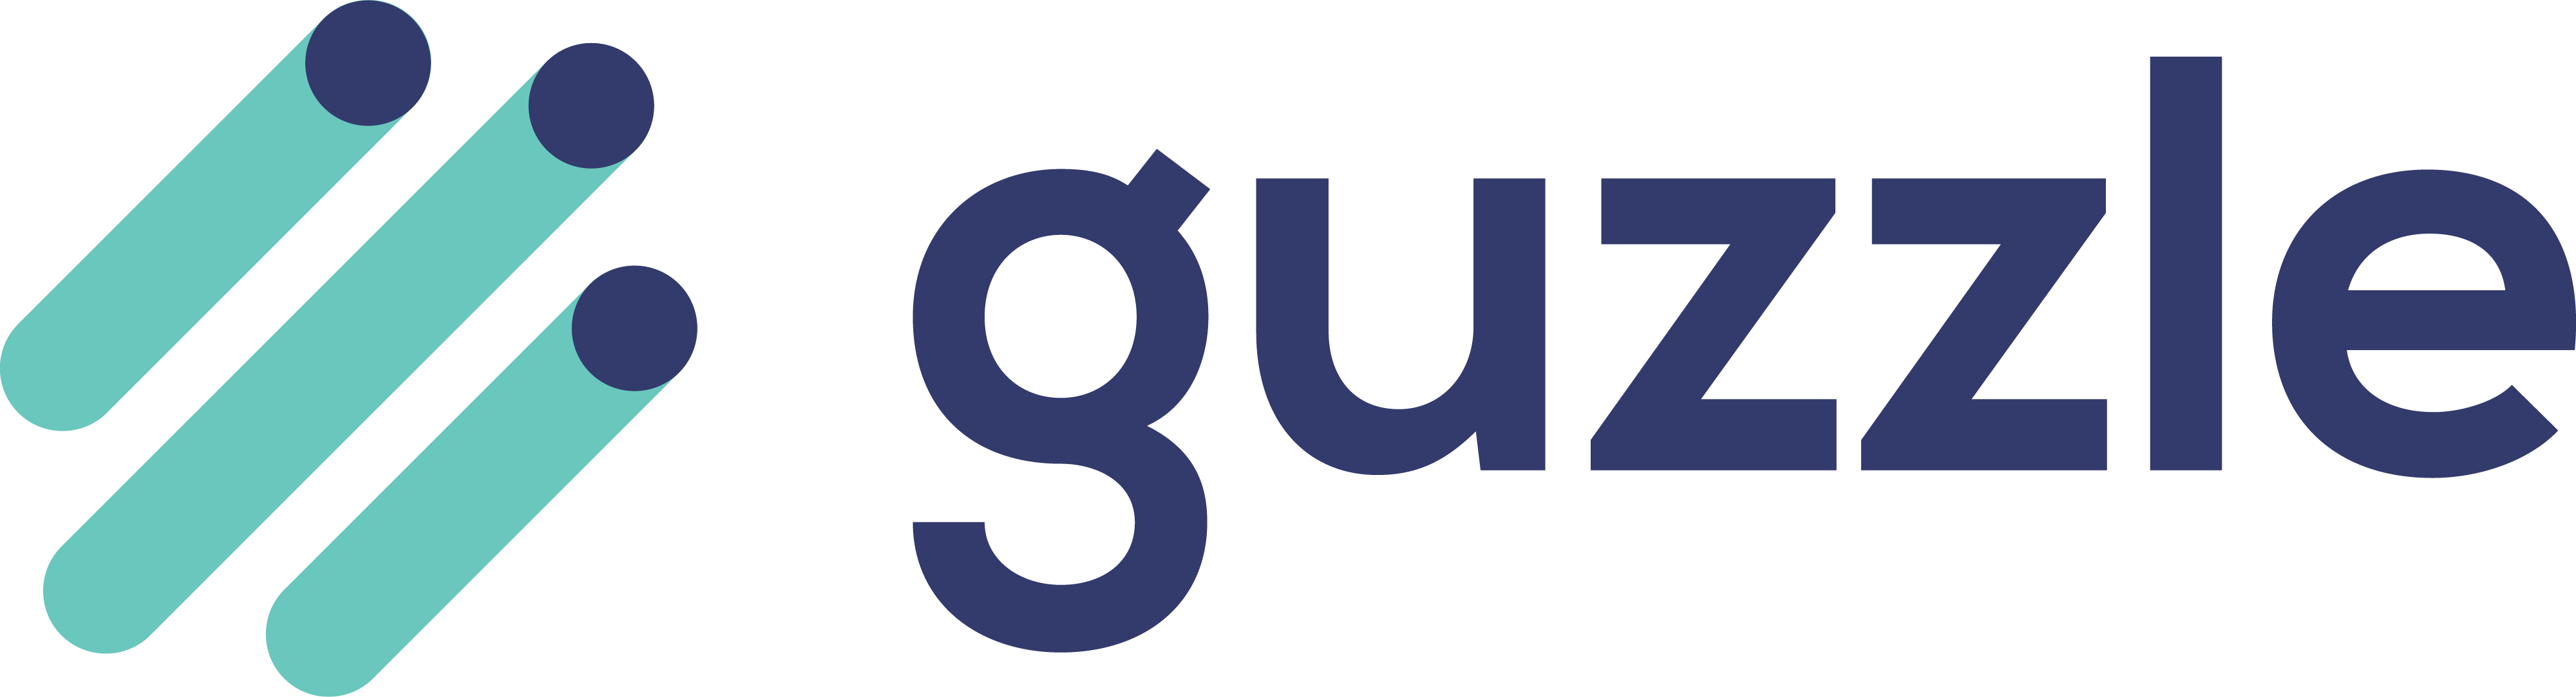 Logotipo Guzzle